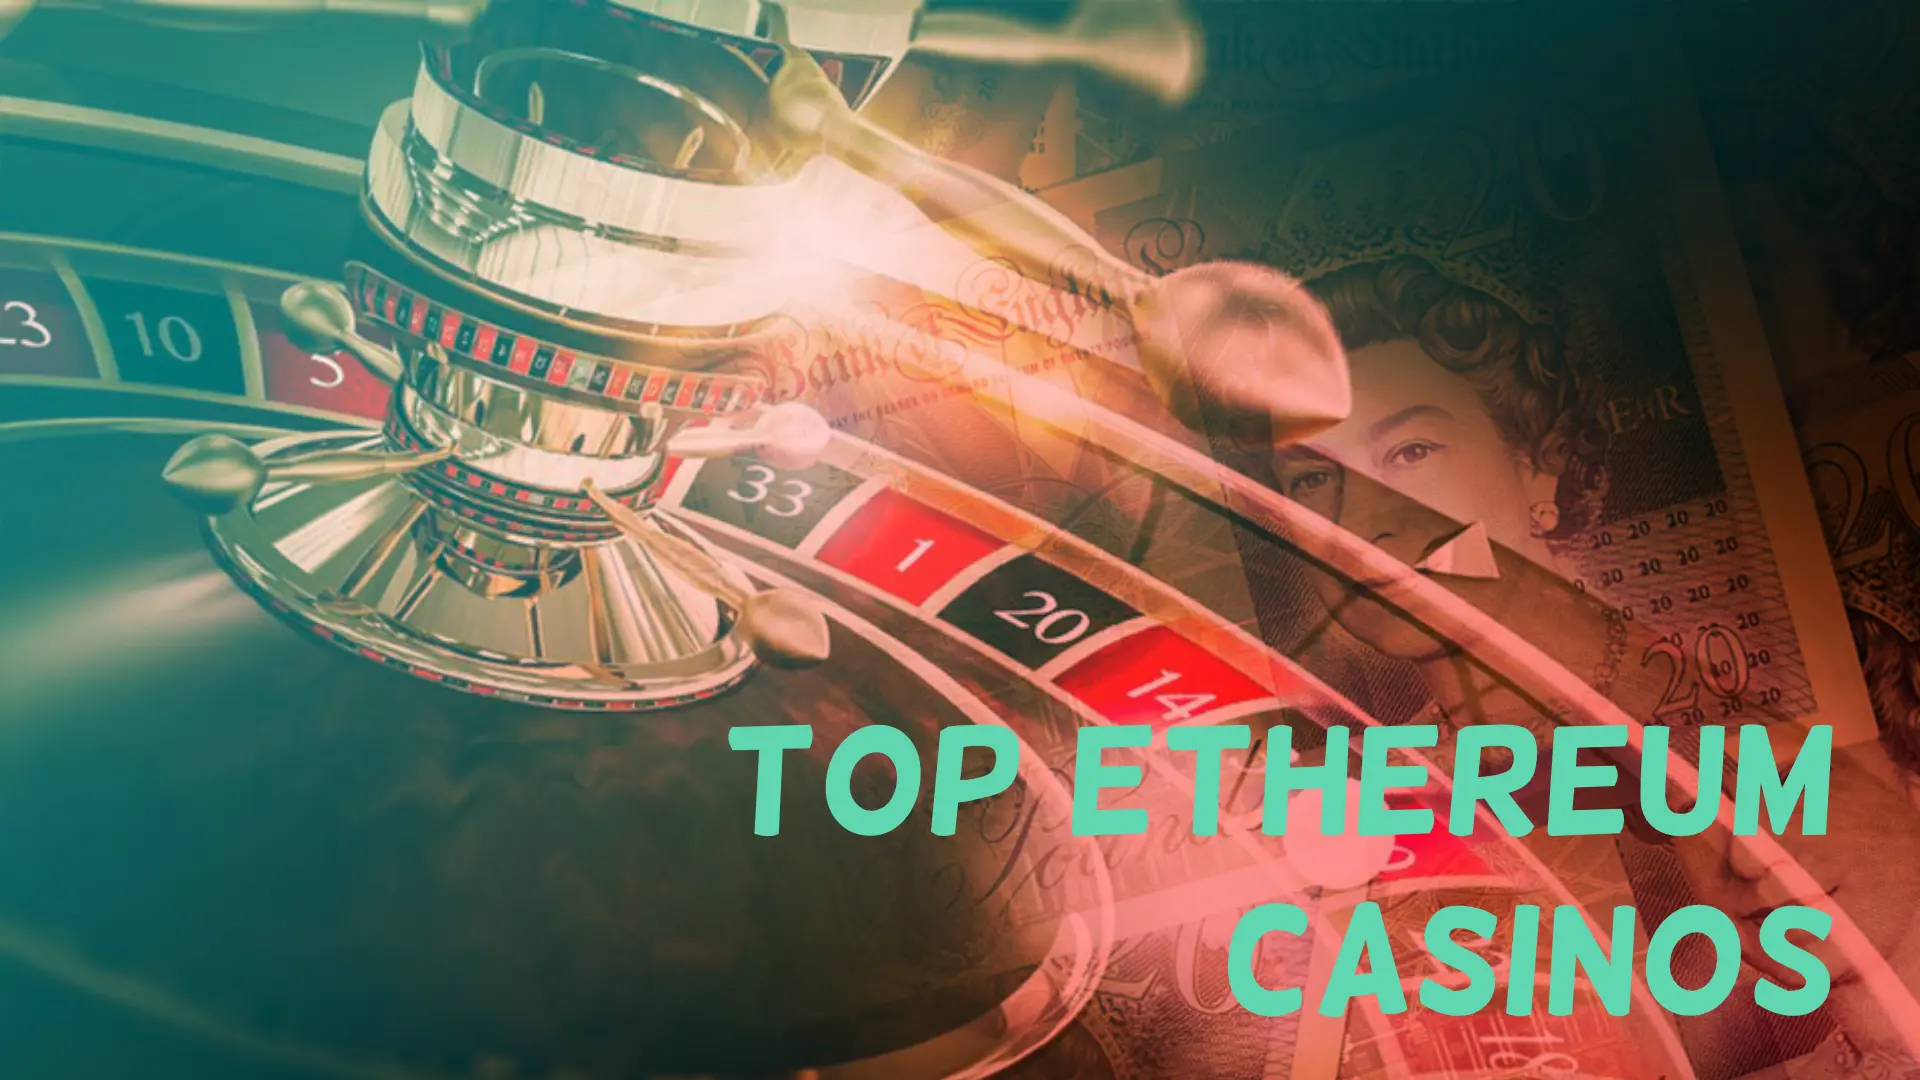 Top Ethereum Casinos